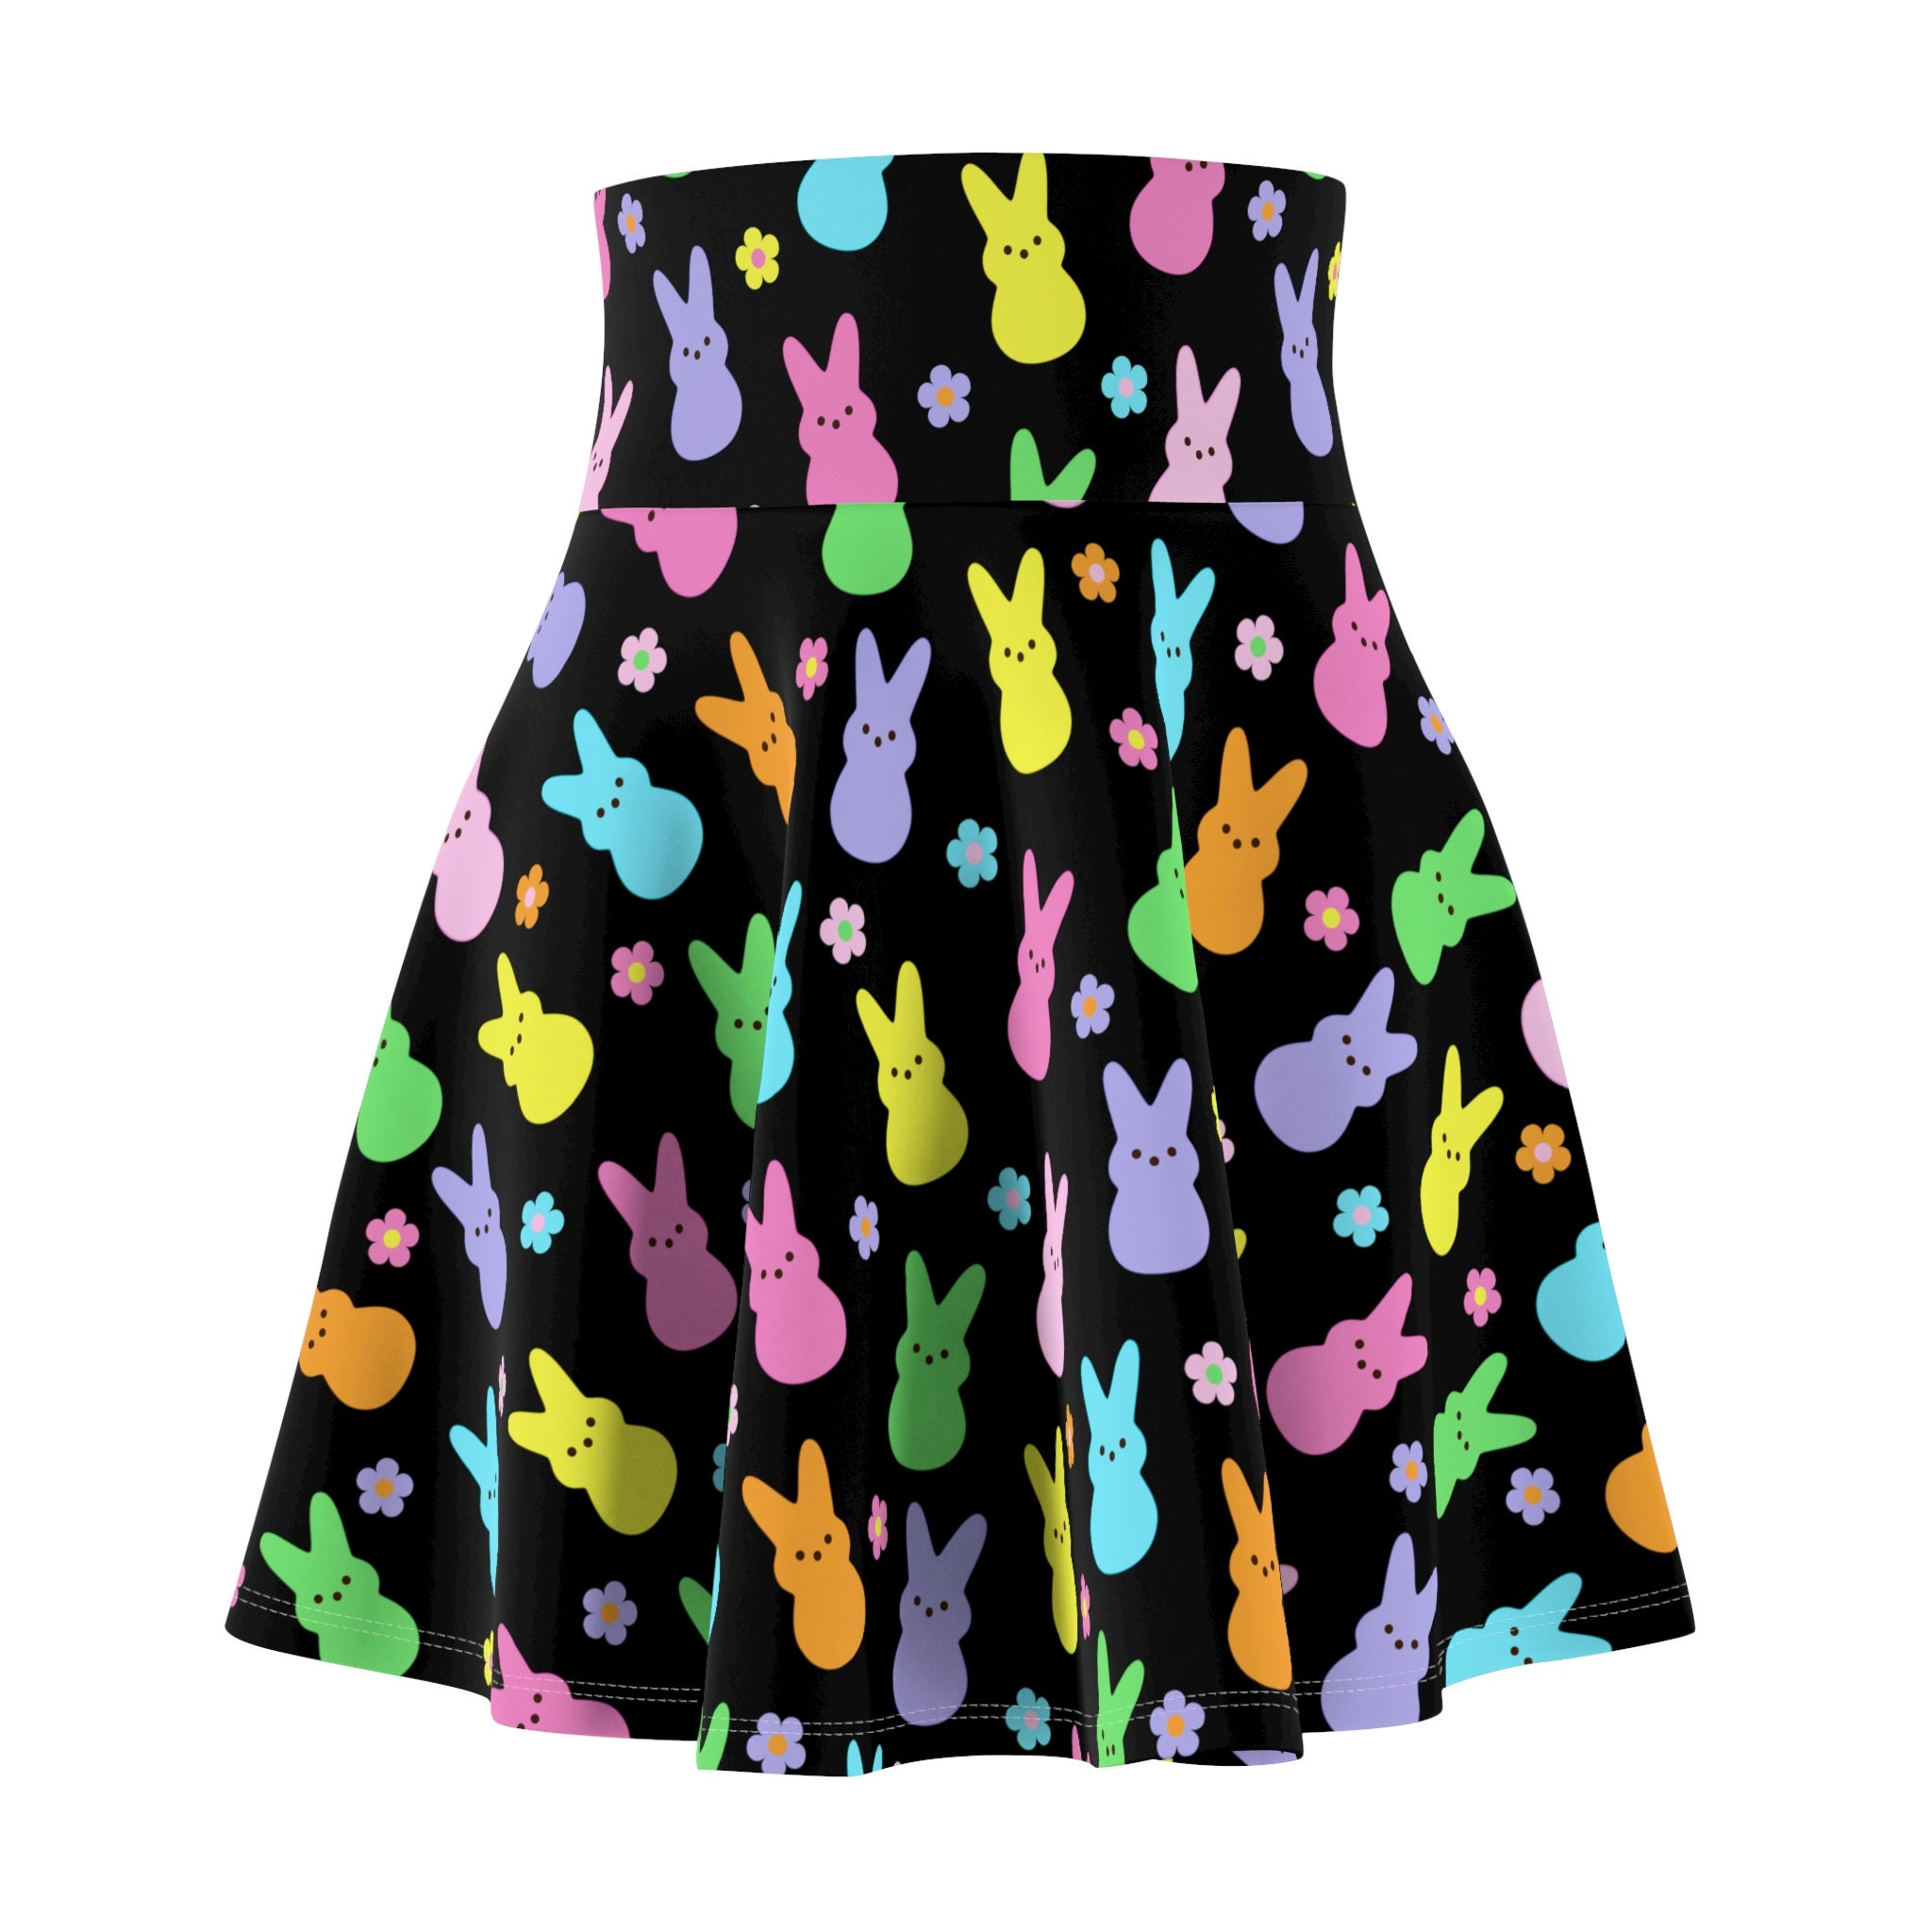 Marshmallow Black Bunny Women's Skater Skirt